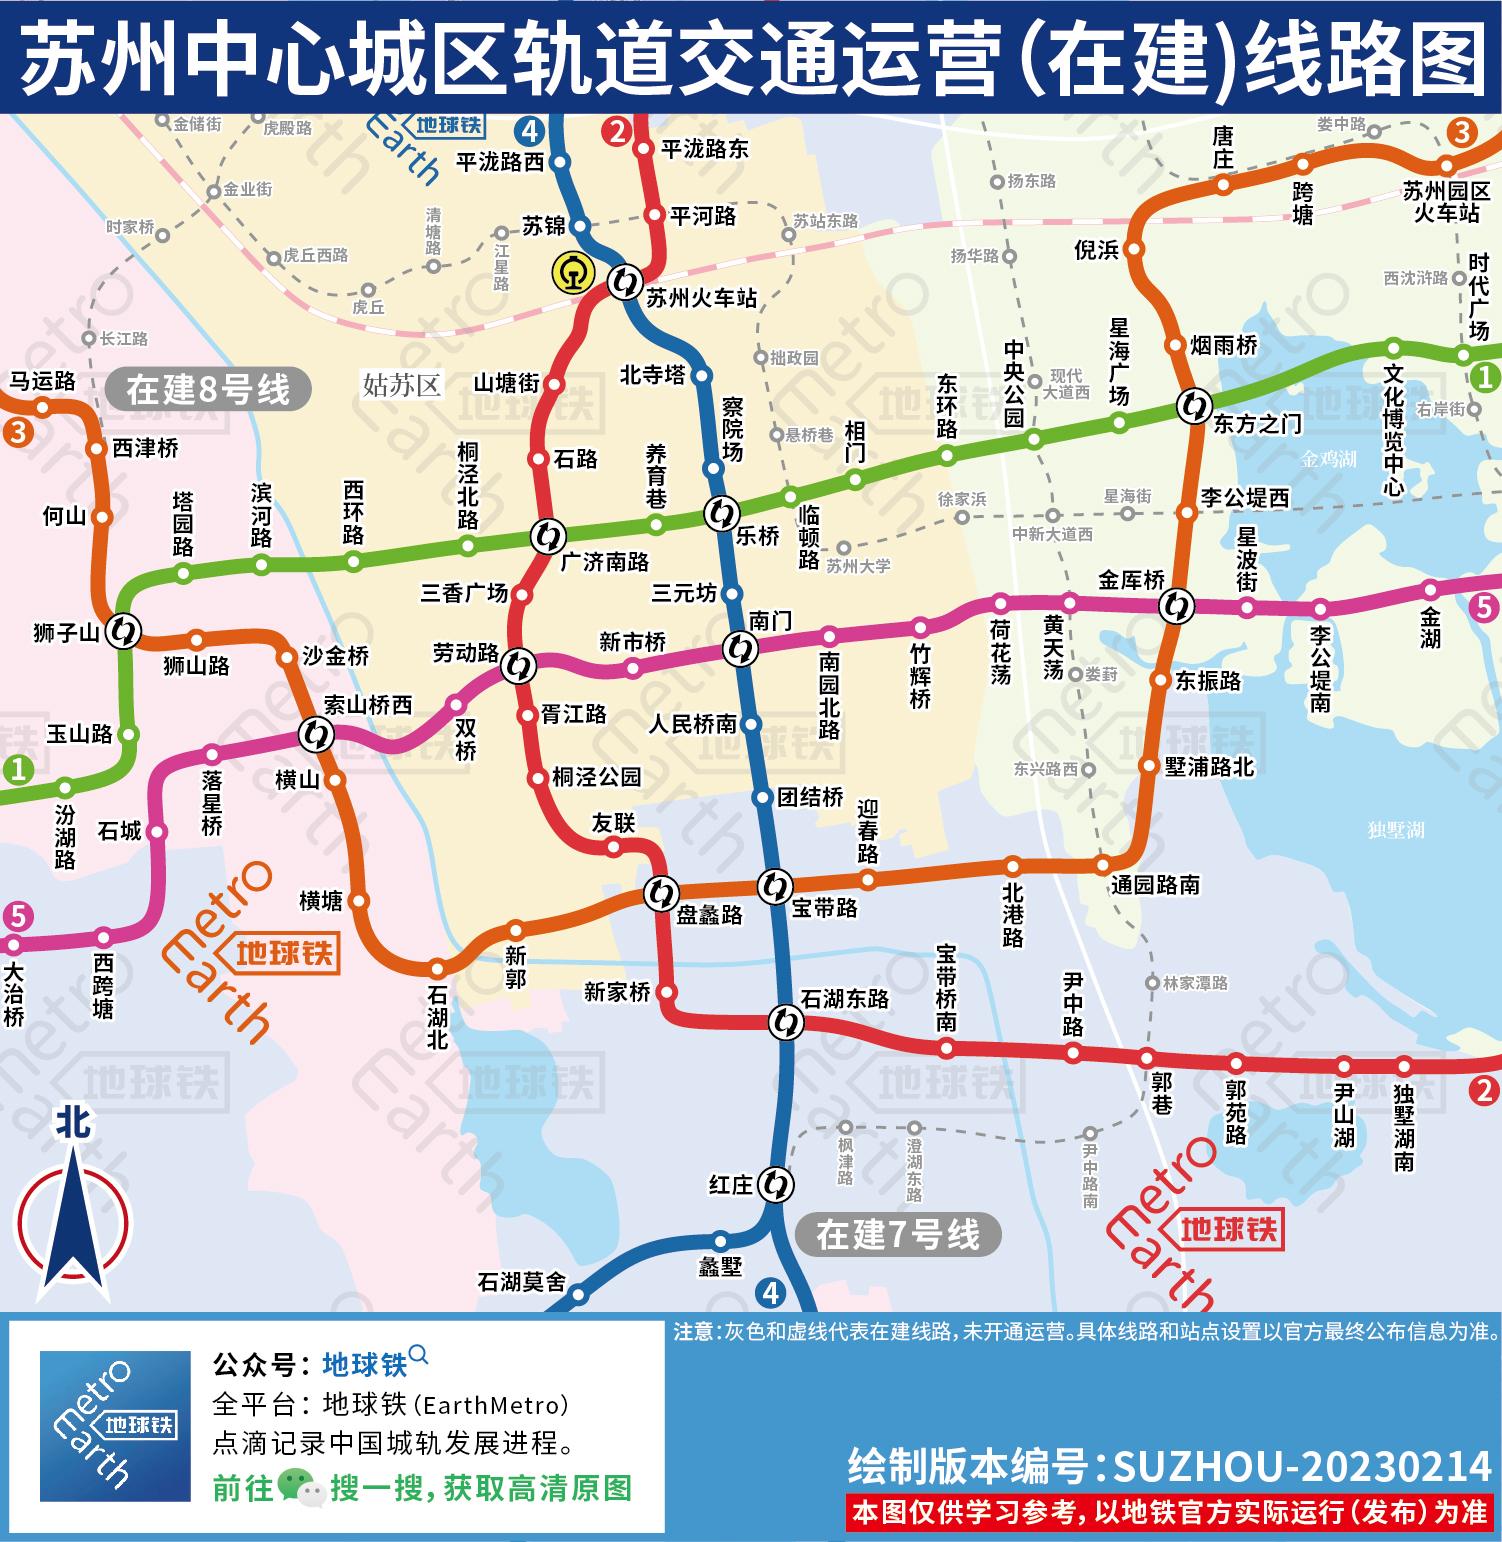 苏州地铁线路 苏州轨道交通运营(在建)线路图，苏州地铁线路图  第6张